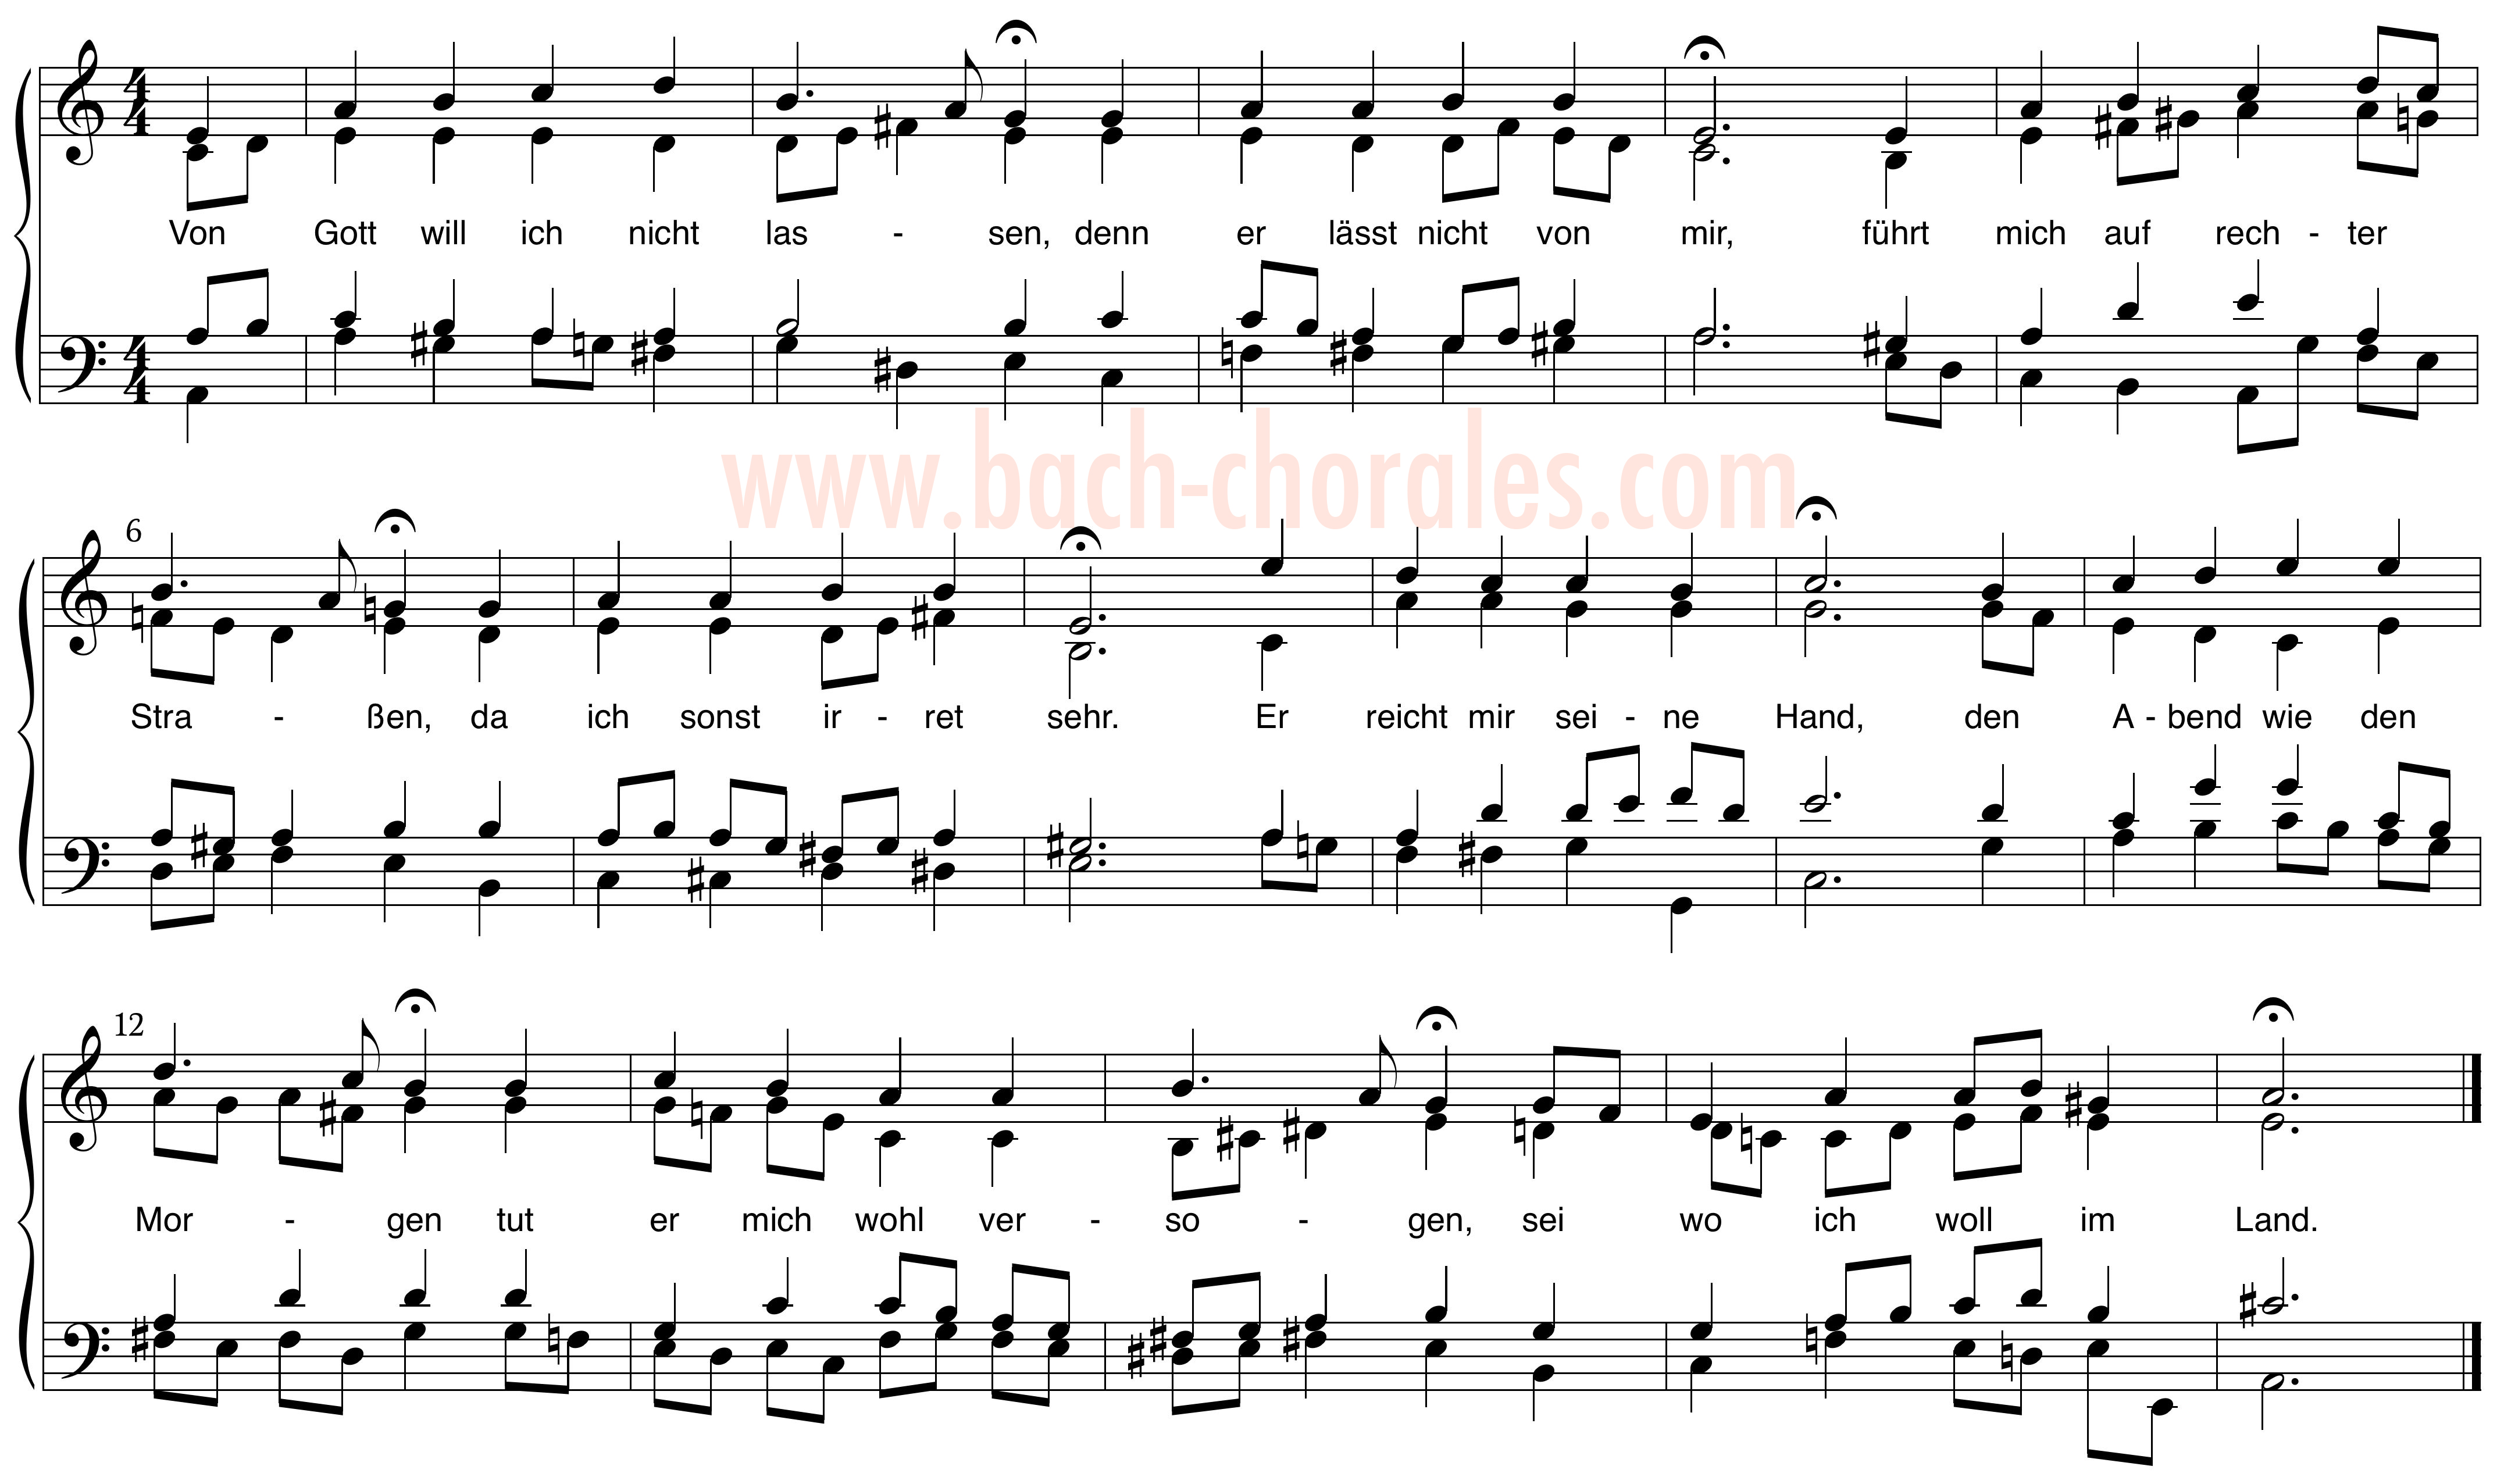 notenbeeld BWV 418 op https://www.bach-chorales.com/